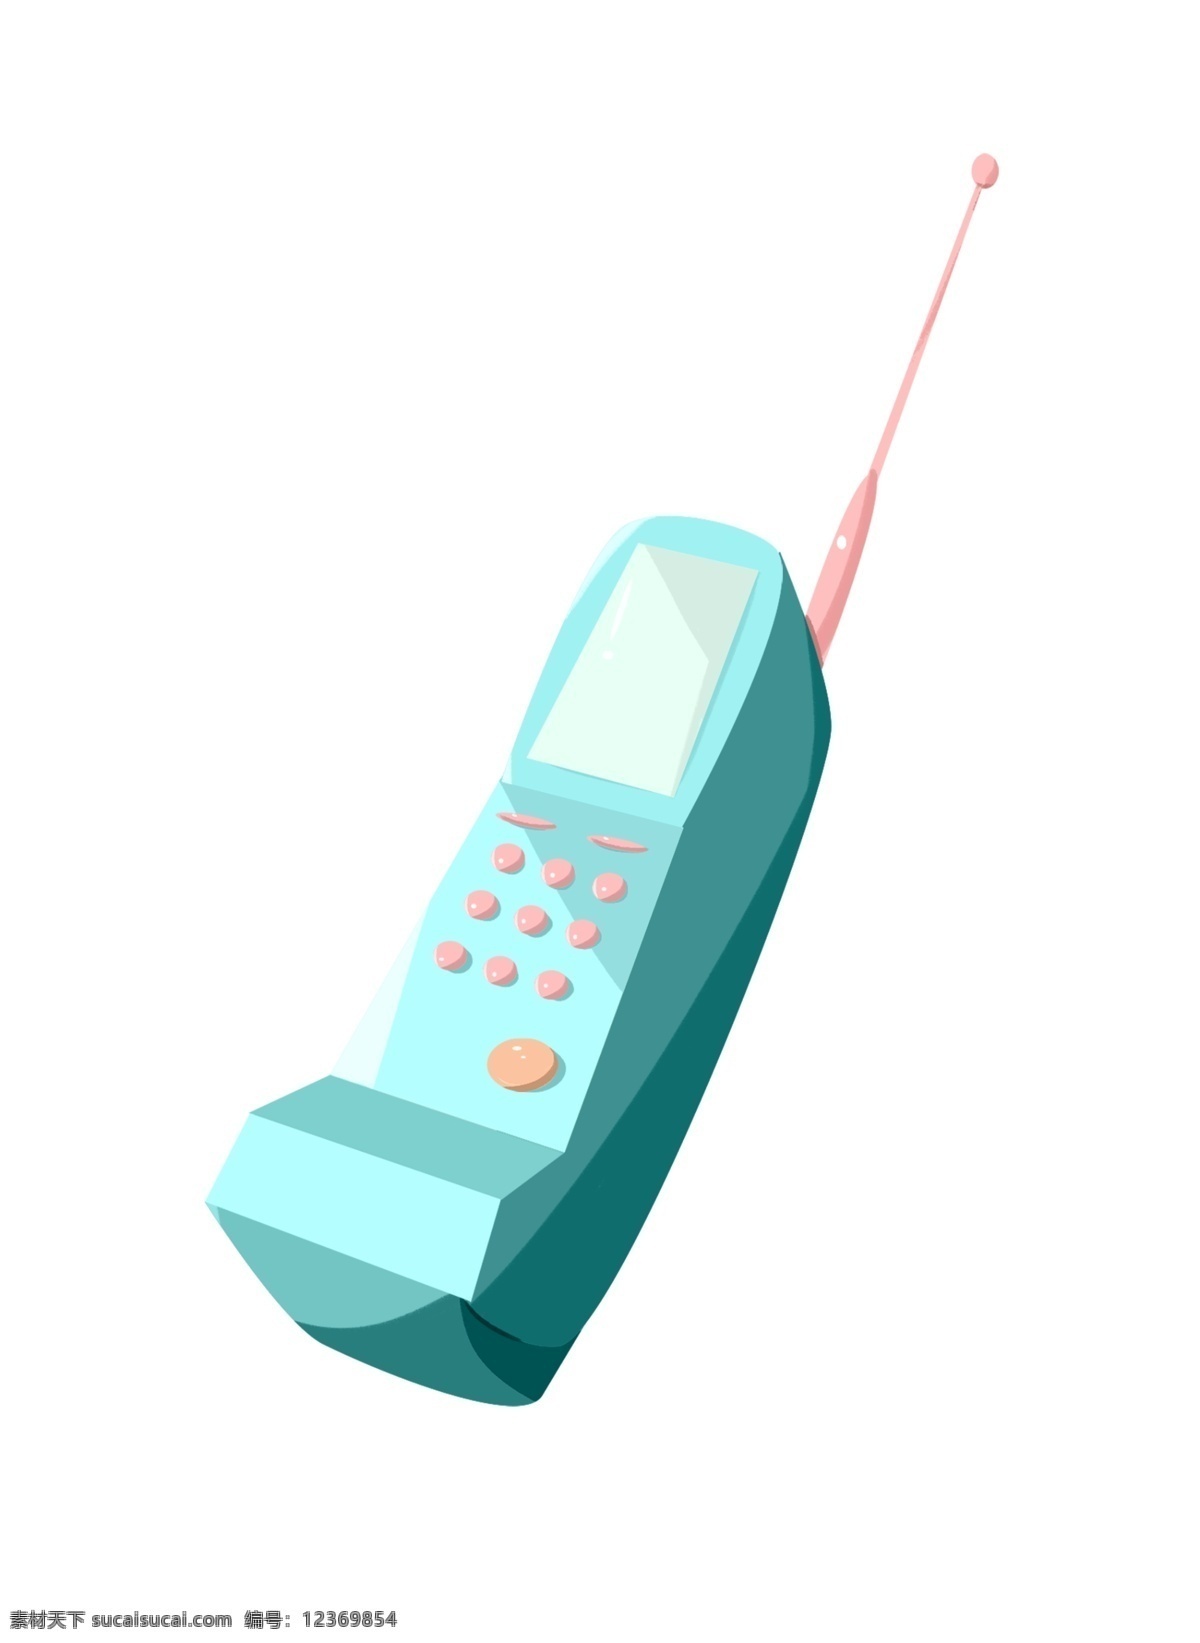 手绘 卡通 蓝绿色 电话 插画 手绘电话 蓝绿色电话 卡通电话 对讲机 粉色按钮 粉色天线 老式电话 玩具电话